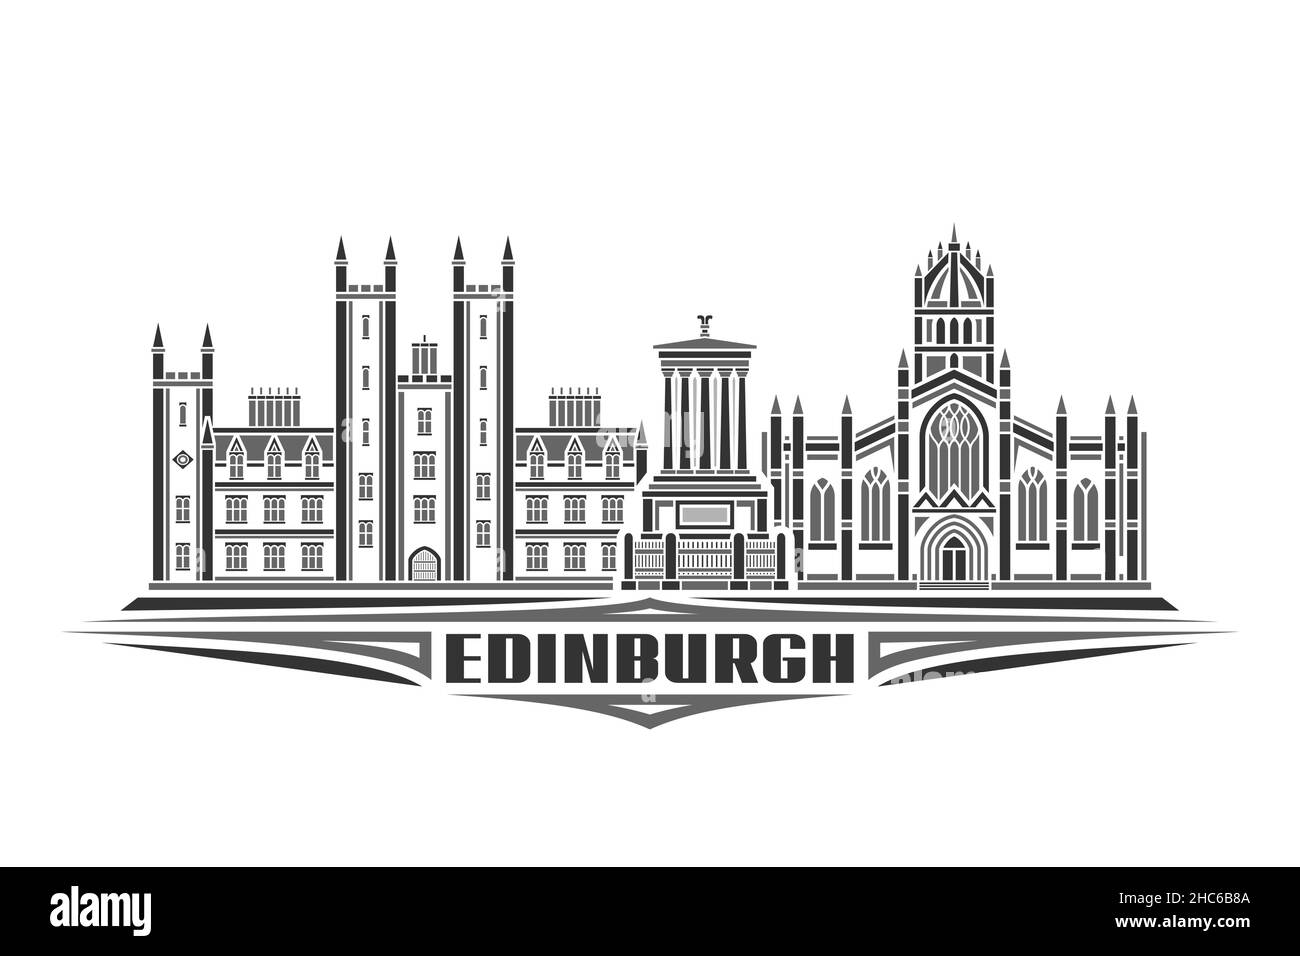 Vektordarstellung von Edinburgh, monochromes horizontales Poster mit linearem Design stadtbild edinburgh, urbanes Linienkunstkonzept mit dekorativen Schriftzügen Stock Vektor